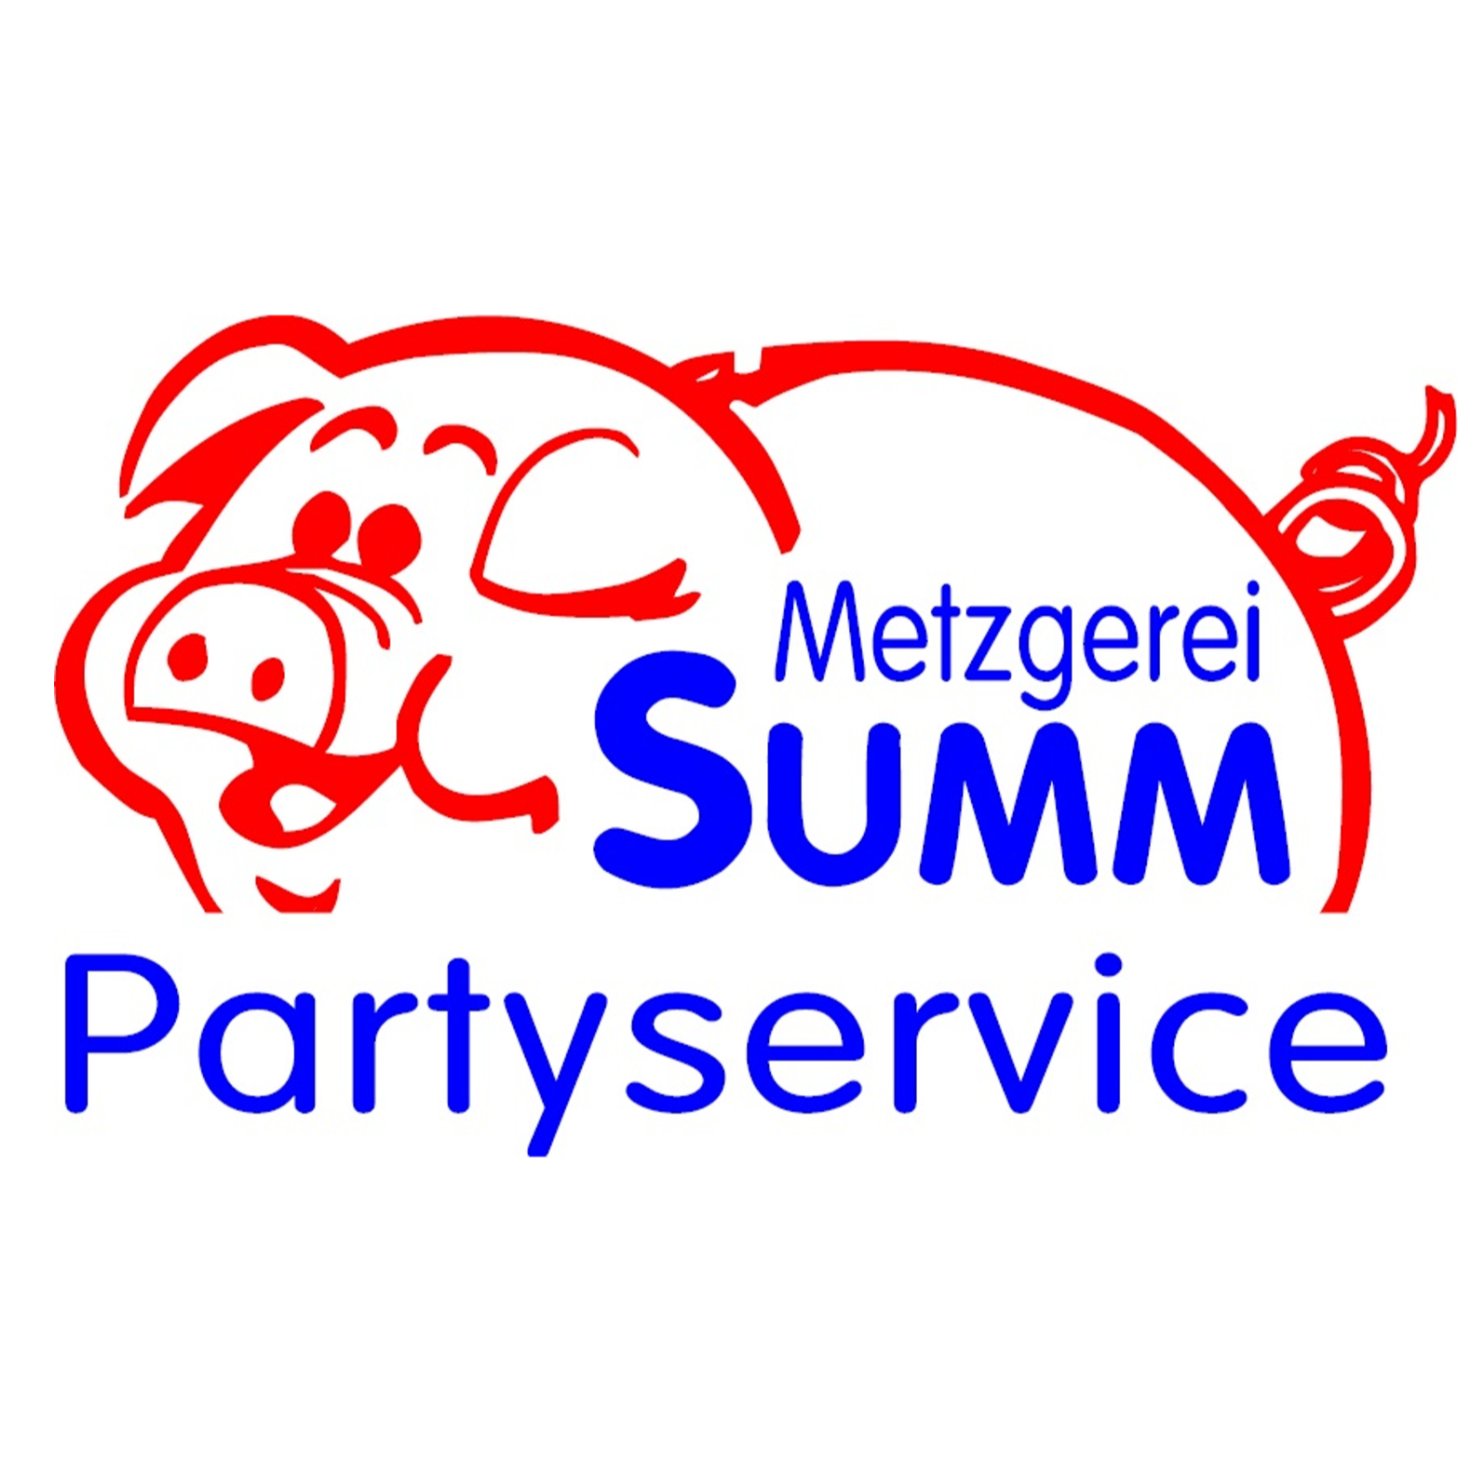 Metzgerei Summ Partyservice